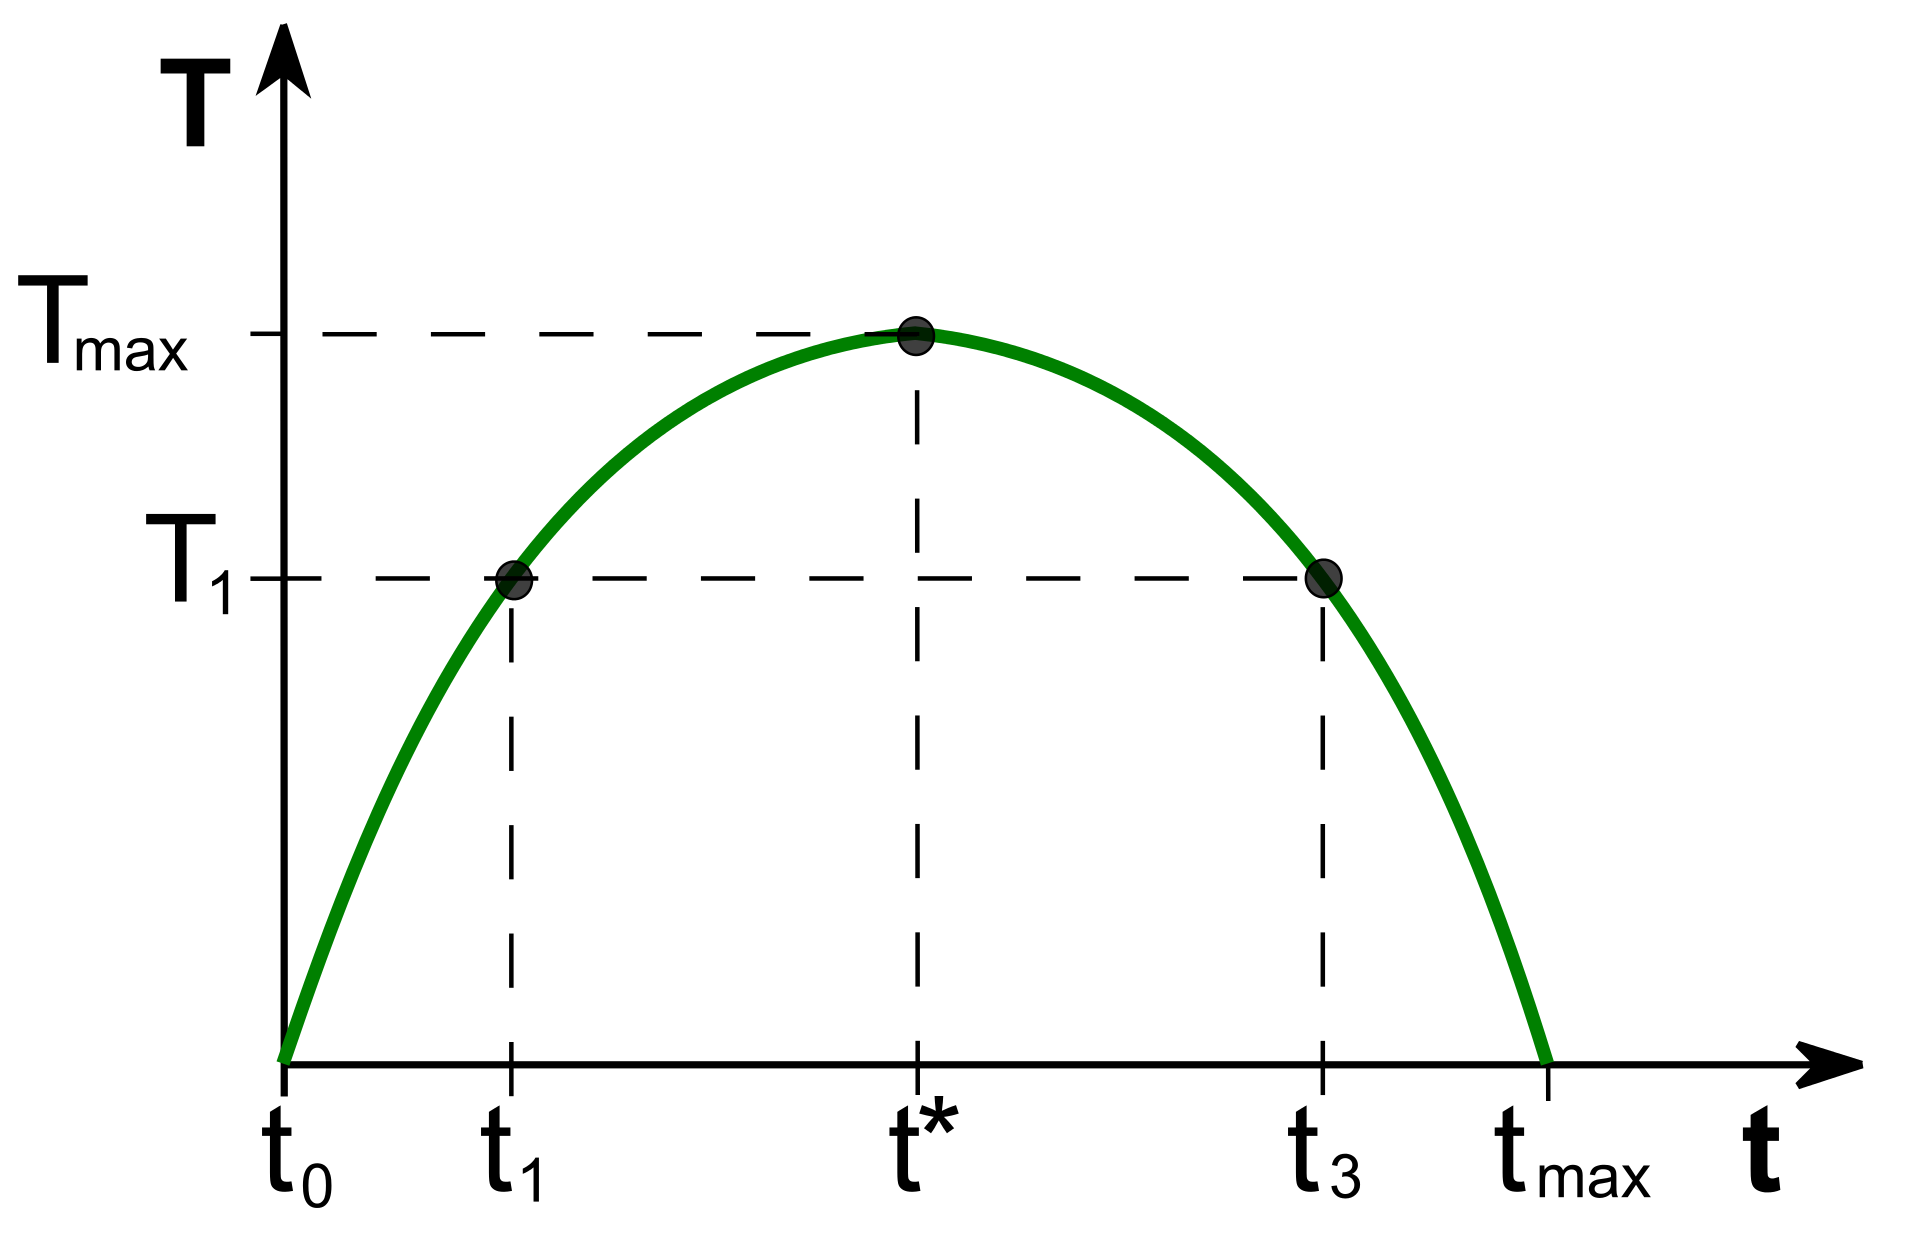 Wykres Krzywej Laffera prezentujący trzy punkty odnoszące się do krzywej laffera